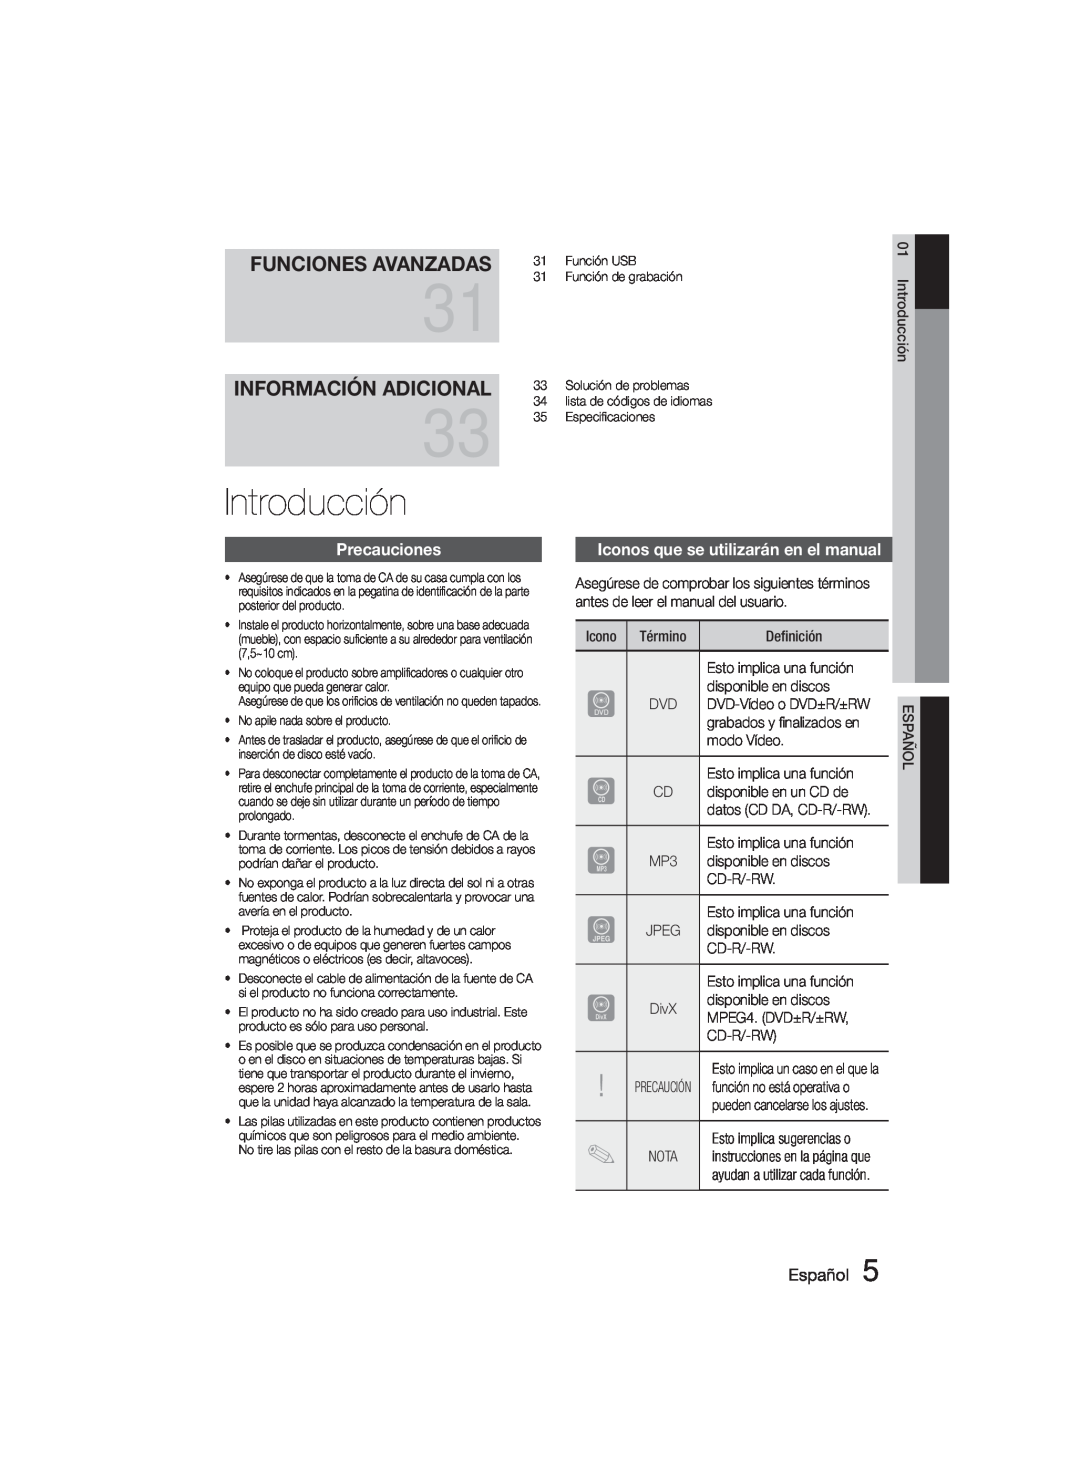 Samsung MM-D330D/ZF Introducción, Precauciones, Iconos que se utilizarán en el manual, Funciones Avanzadas, Español 